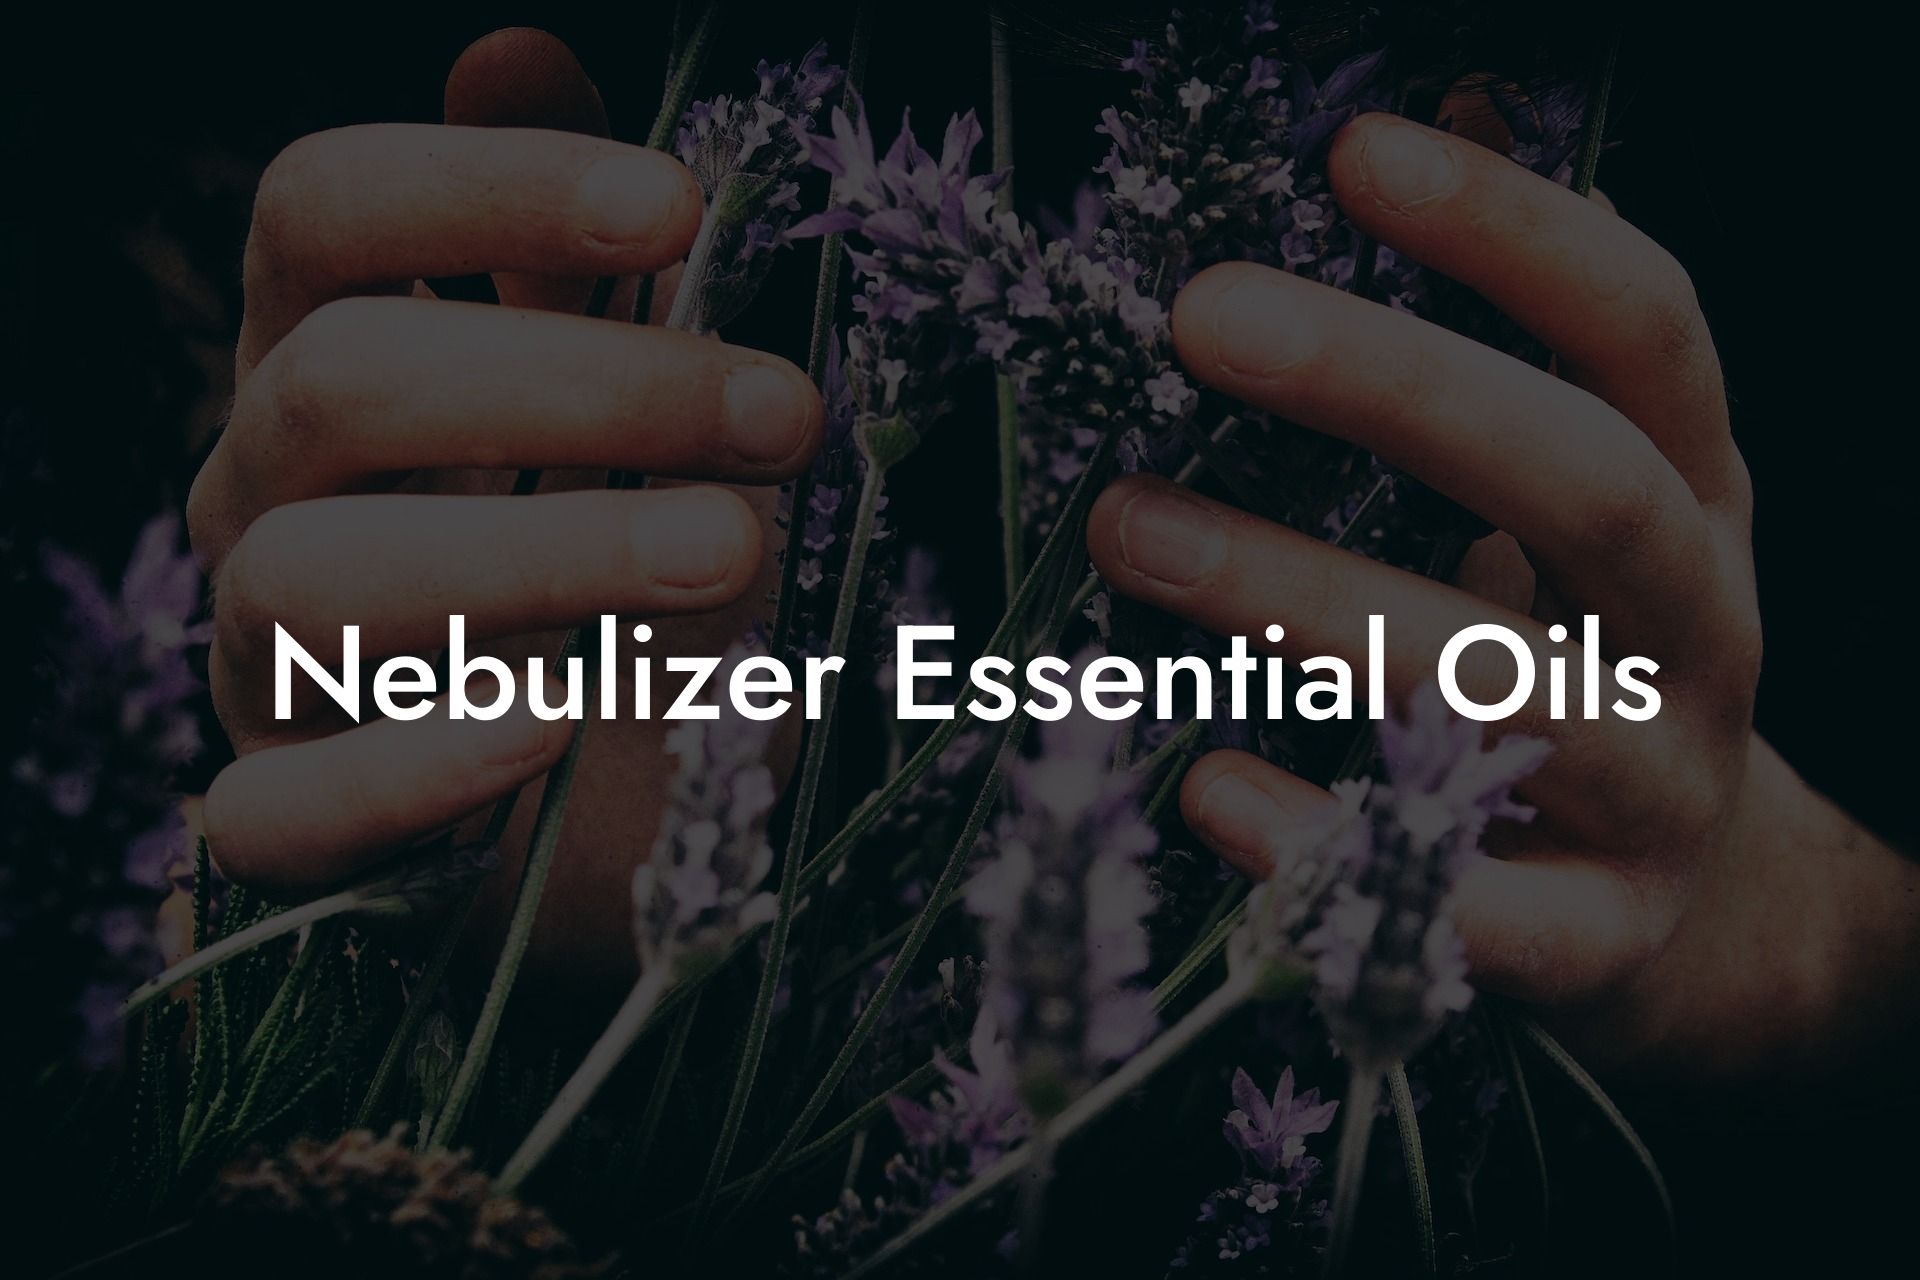 Nebulizer Essential Oils